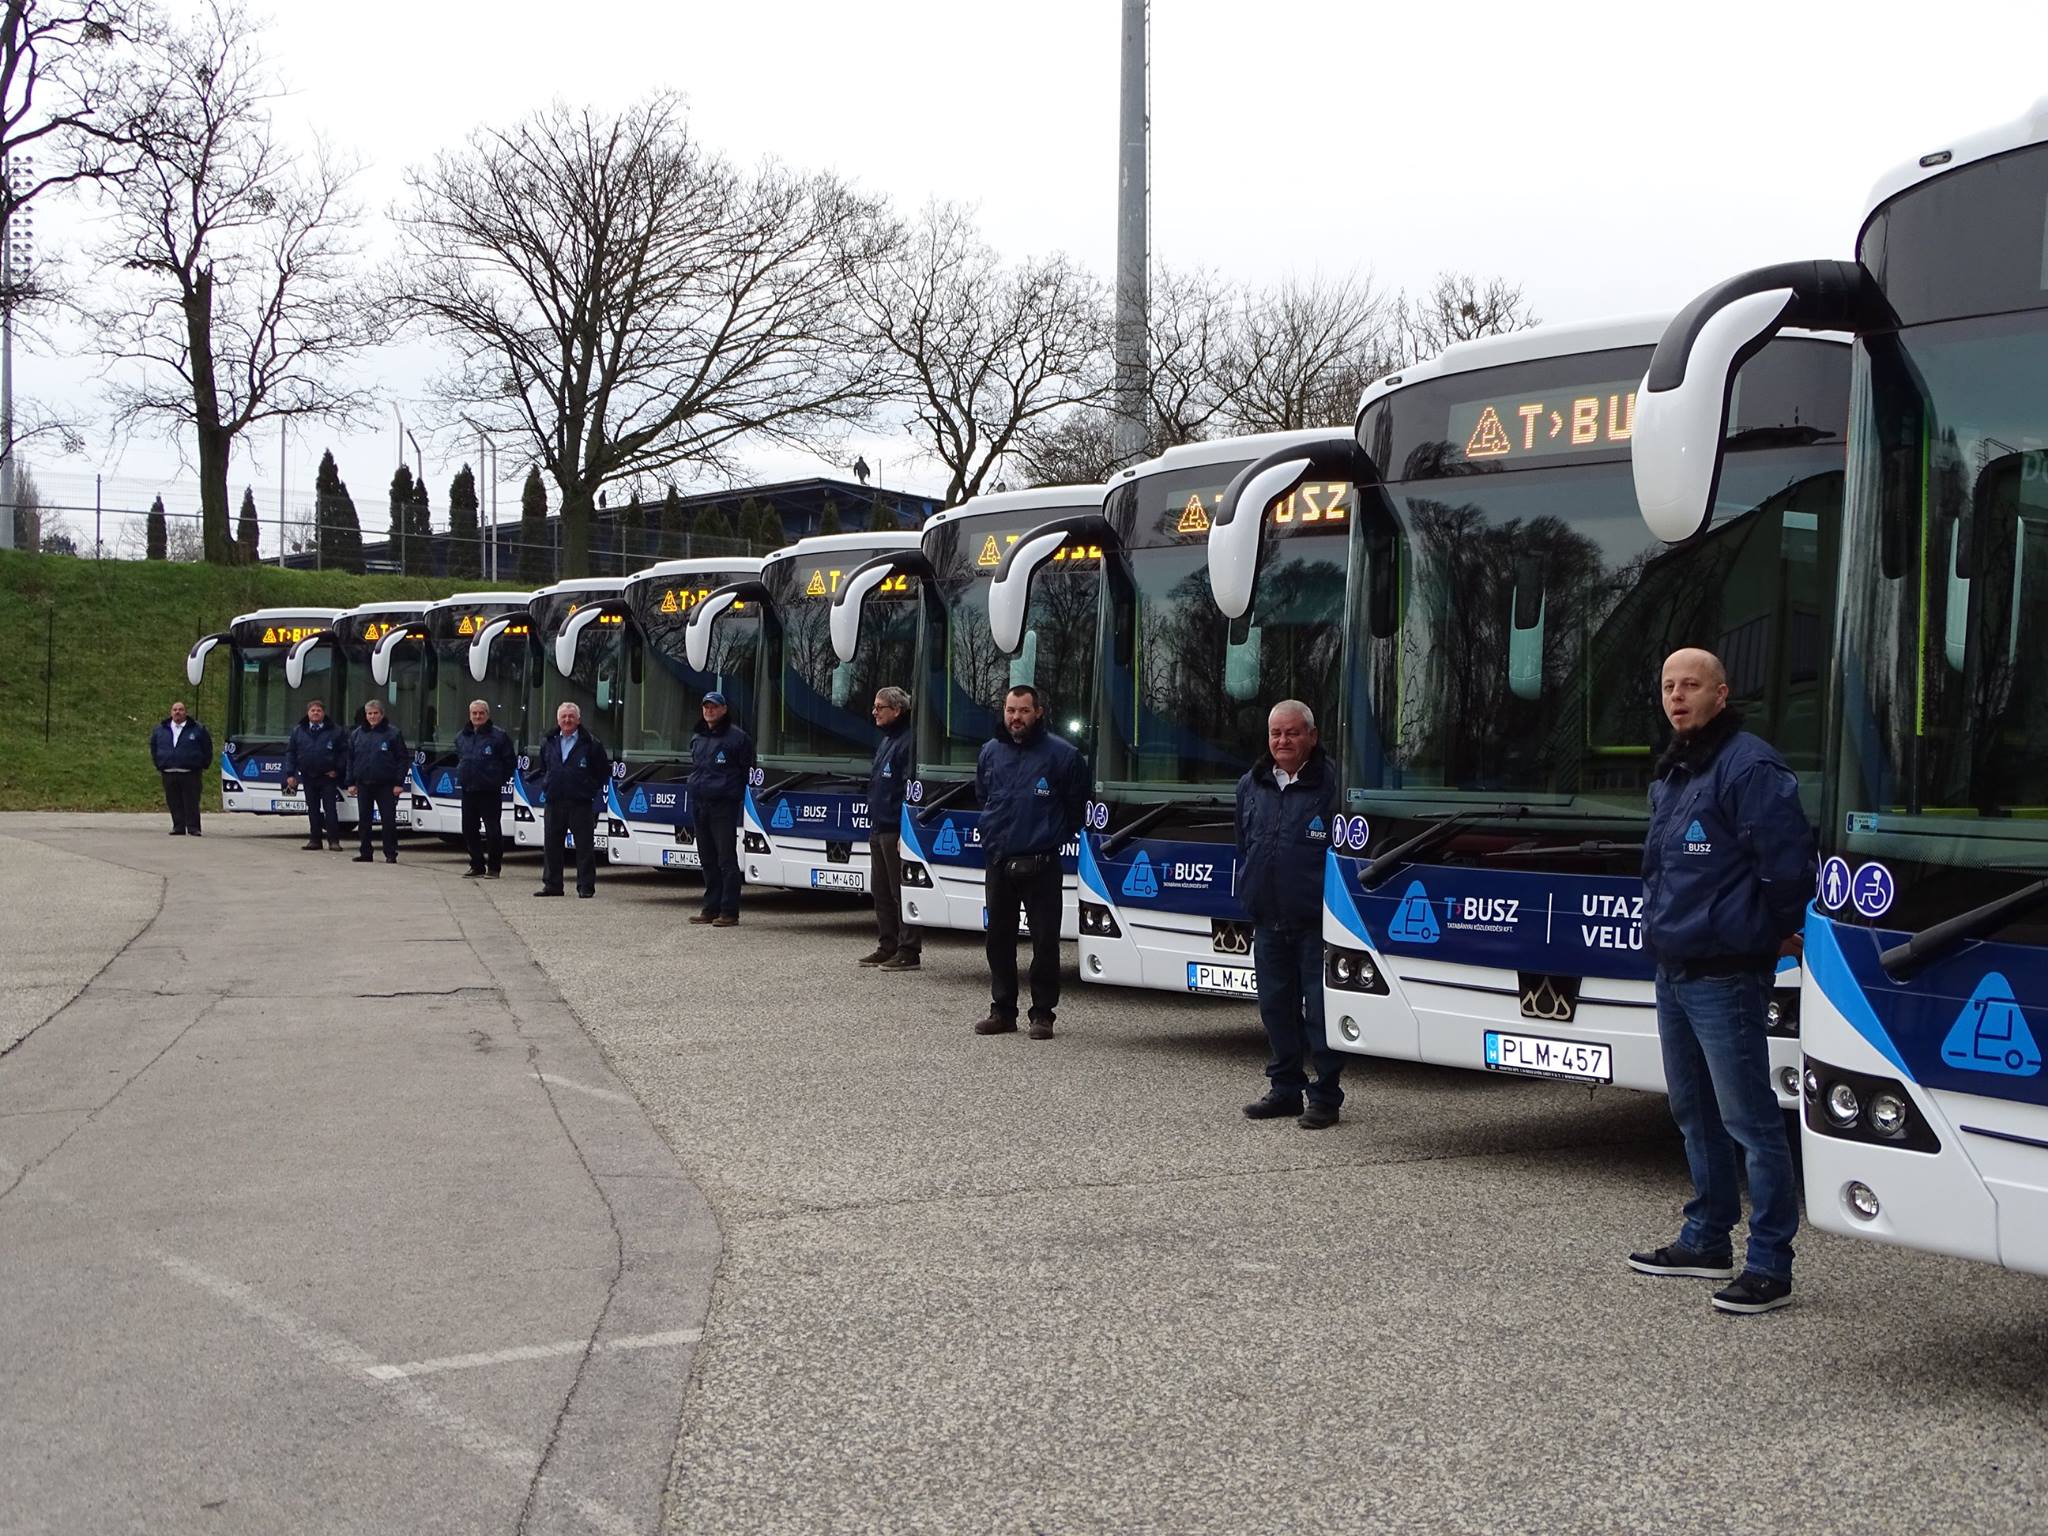 A húsz Credo Econell 12-t már decemberben átadták, és átmenetileg két protó Econell 13-at is biztosított a Kravtex. A többi új busz egyelőre még nem érkezett meg, így a szolgáltatóváltás ellenére jó néhány KNYKK-s busz is forgalomban maradt (fotó: T-Busz)